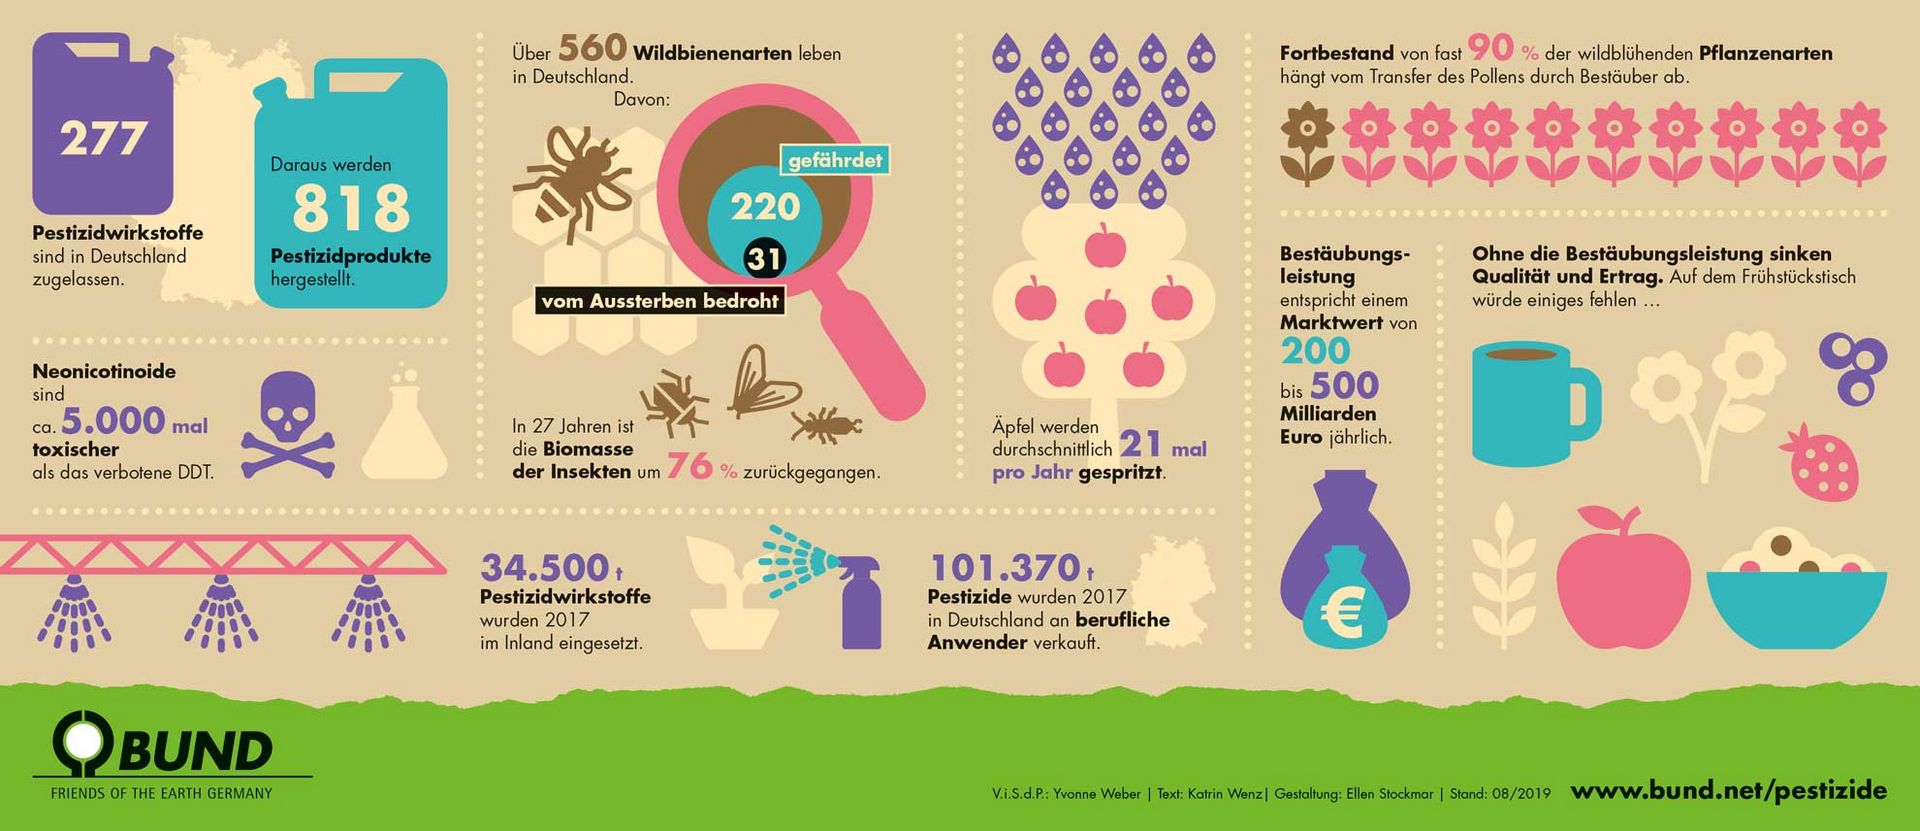 Infografik: Pestizide und Wildbienen